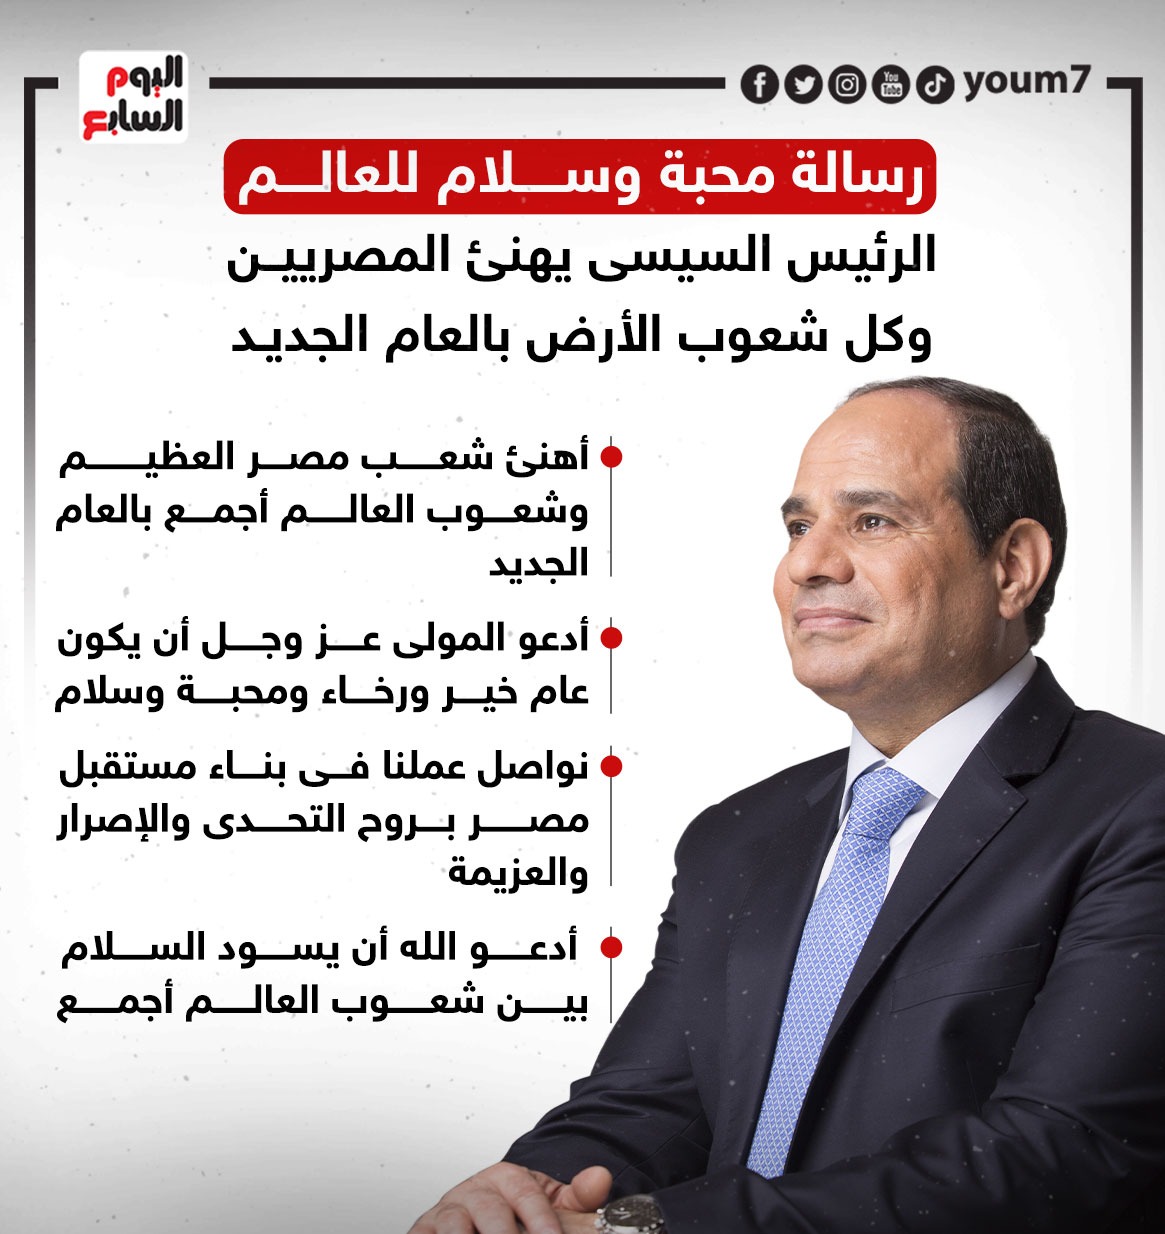 الرئيس السيسى يهنئ المصريين وكل شعوب الأرض بالعام الجديد